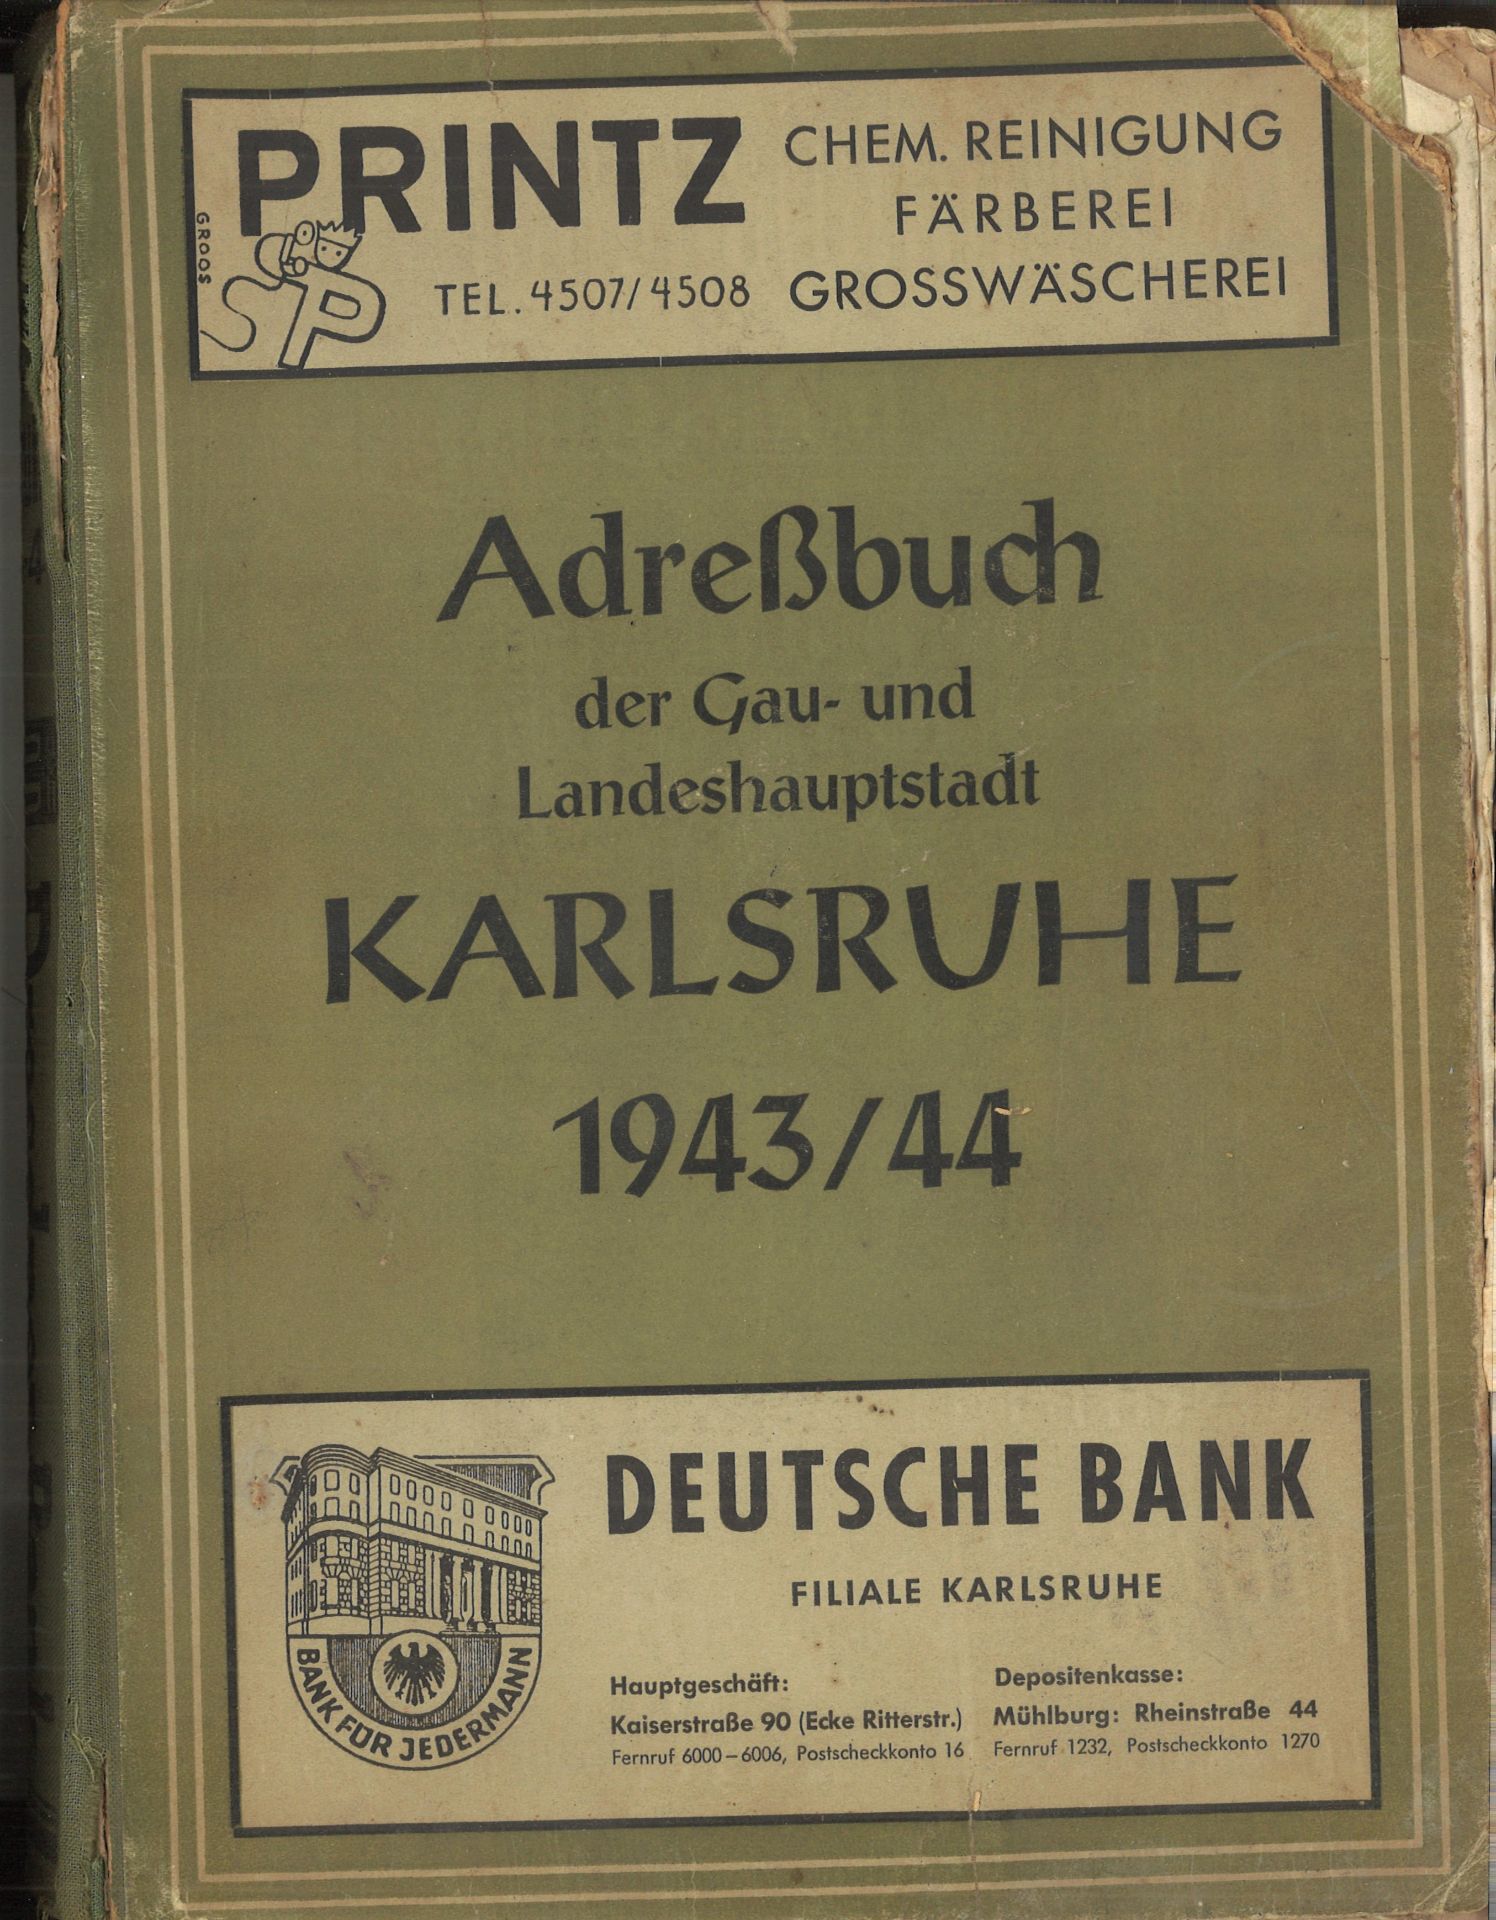 Adressbuch der Stadt Karlsruhe von 1943/44, siebzigster Jahrgang, Adressbuchverlag G. Braun,